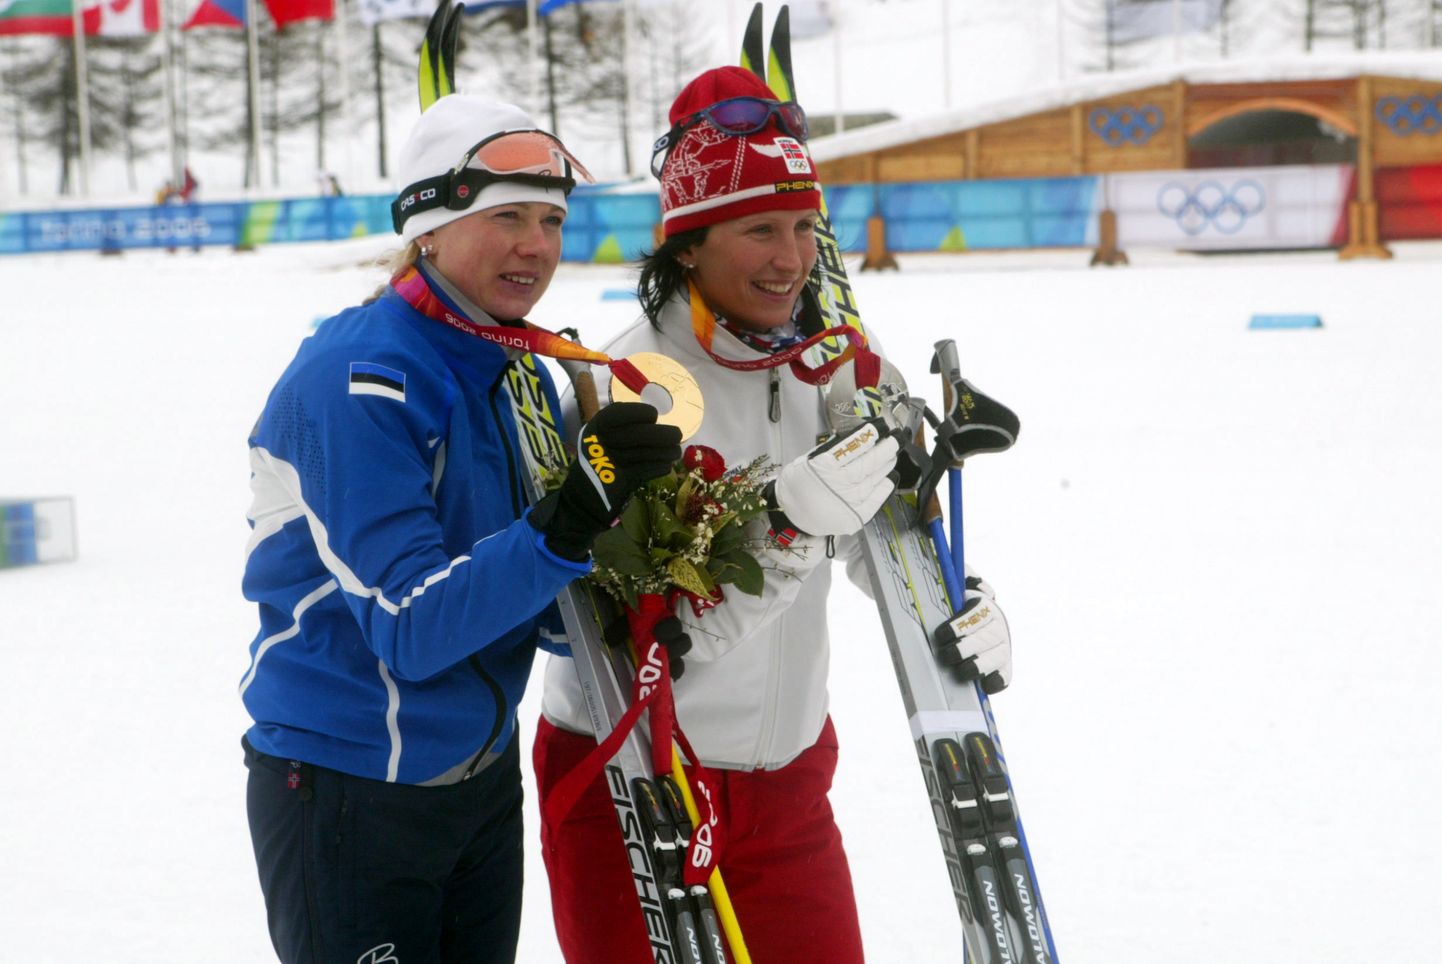 Norralased jälgisid Kristina Šmigun-Vähi juhtumit huviga, sest eestlanna karistamise järel oleks Marti Björgen saanud juurde ühe olümpiakulla.